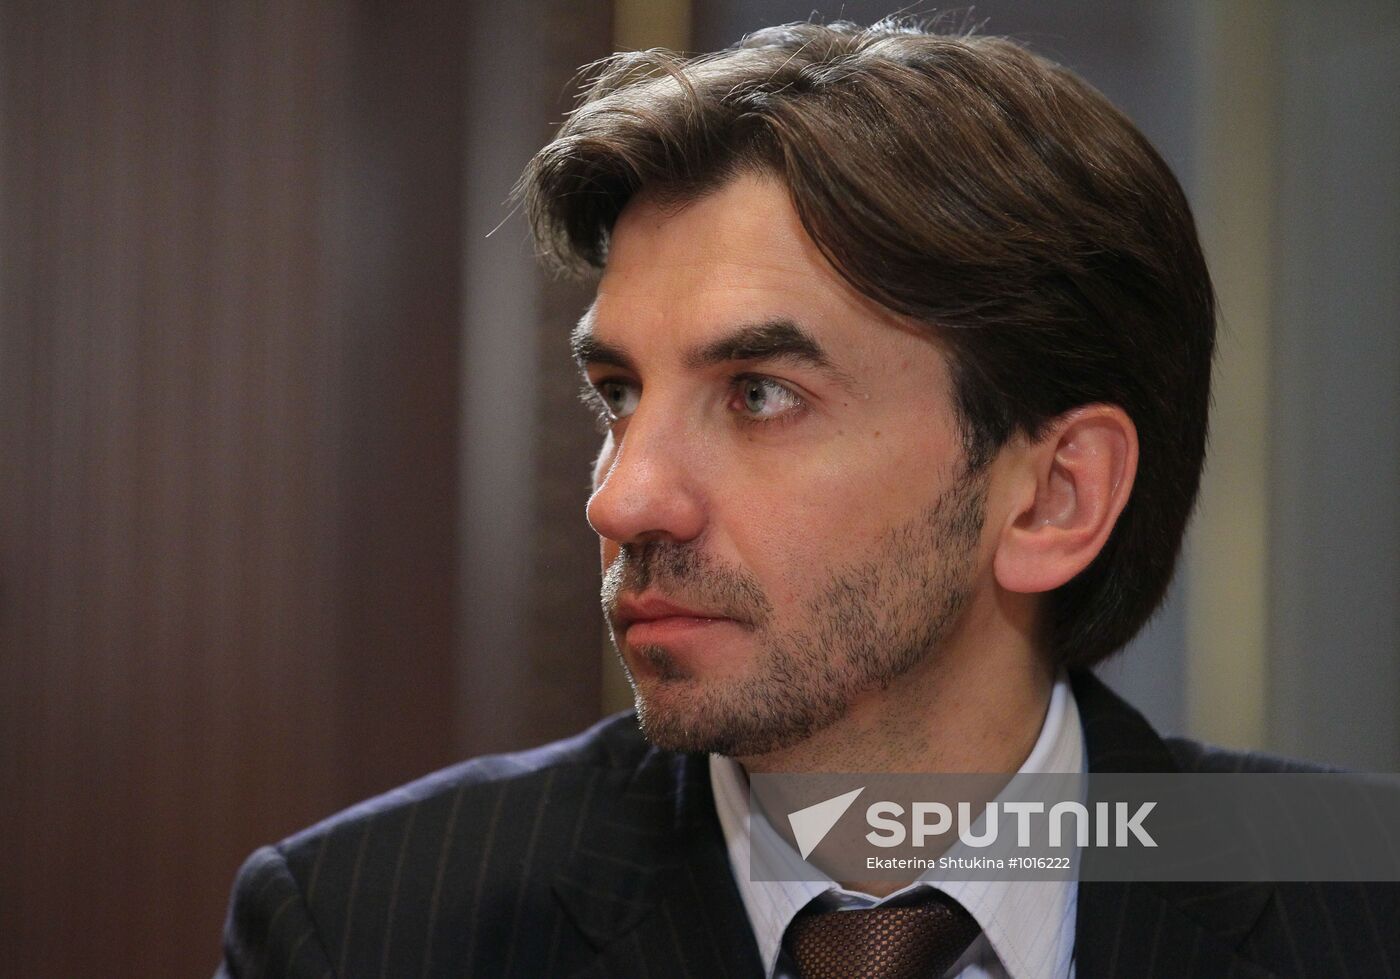 Mikhail Abyzov appointed presidential adviser